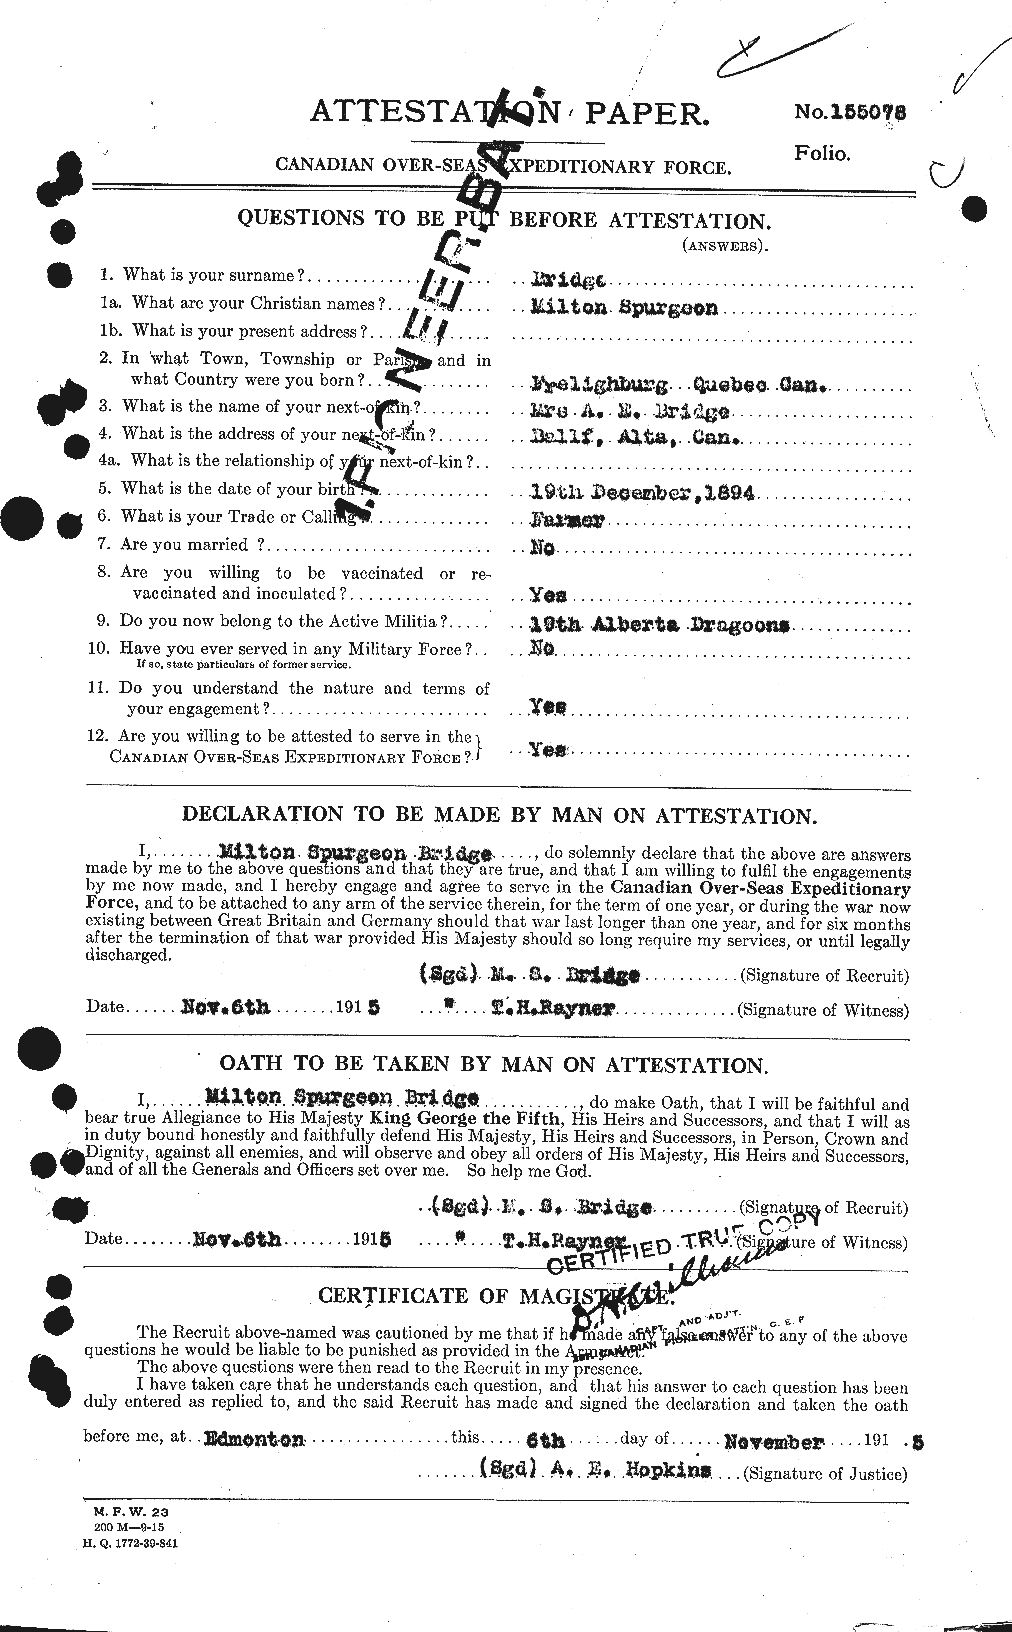 Dossiers du Personnel de la Première Guerre mondiale - CEC 261340a